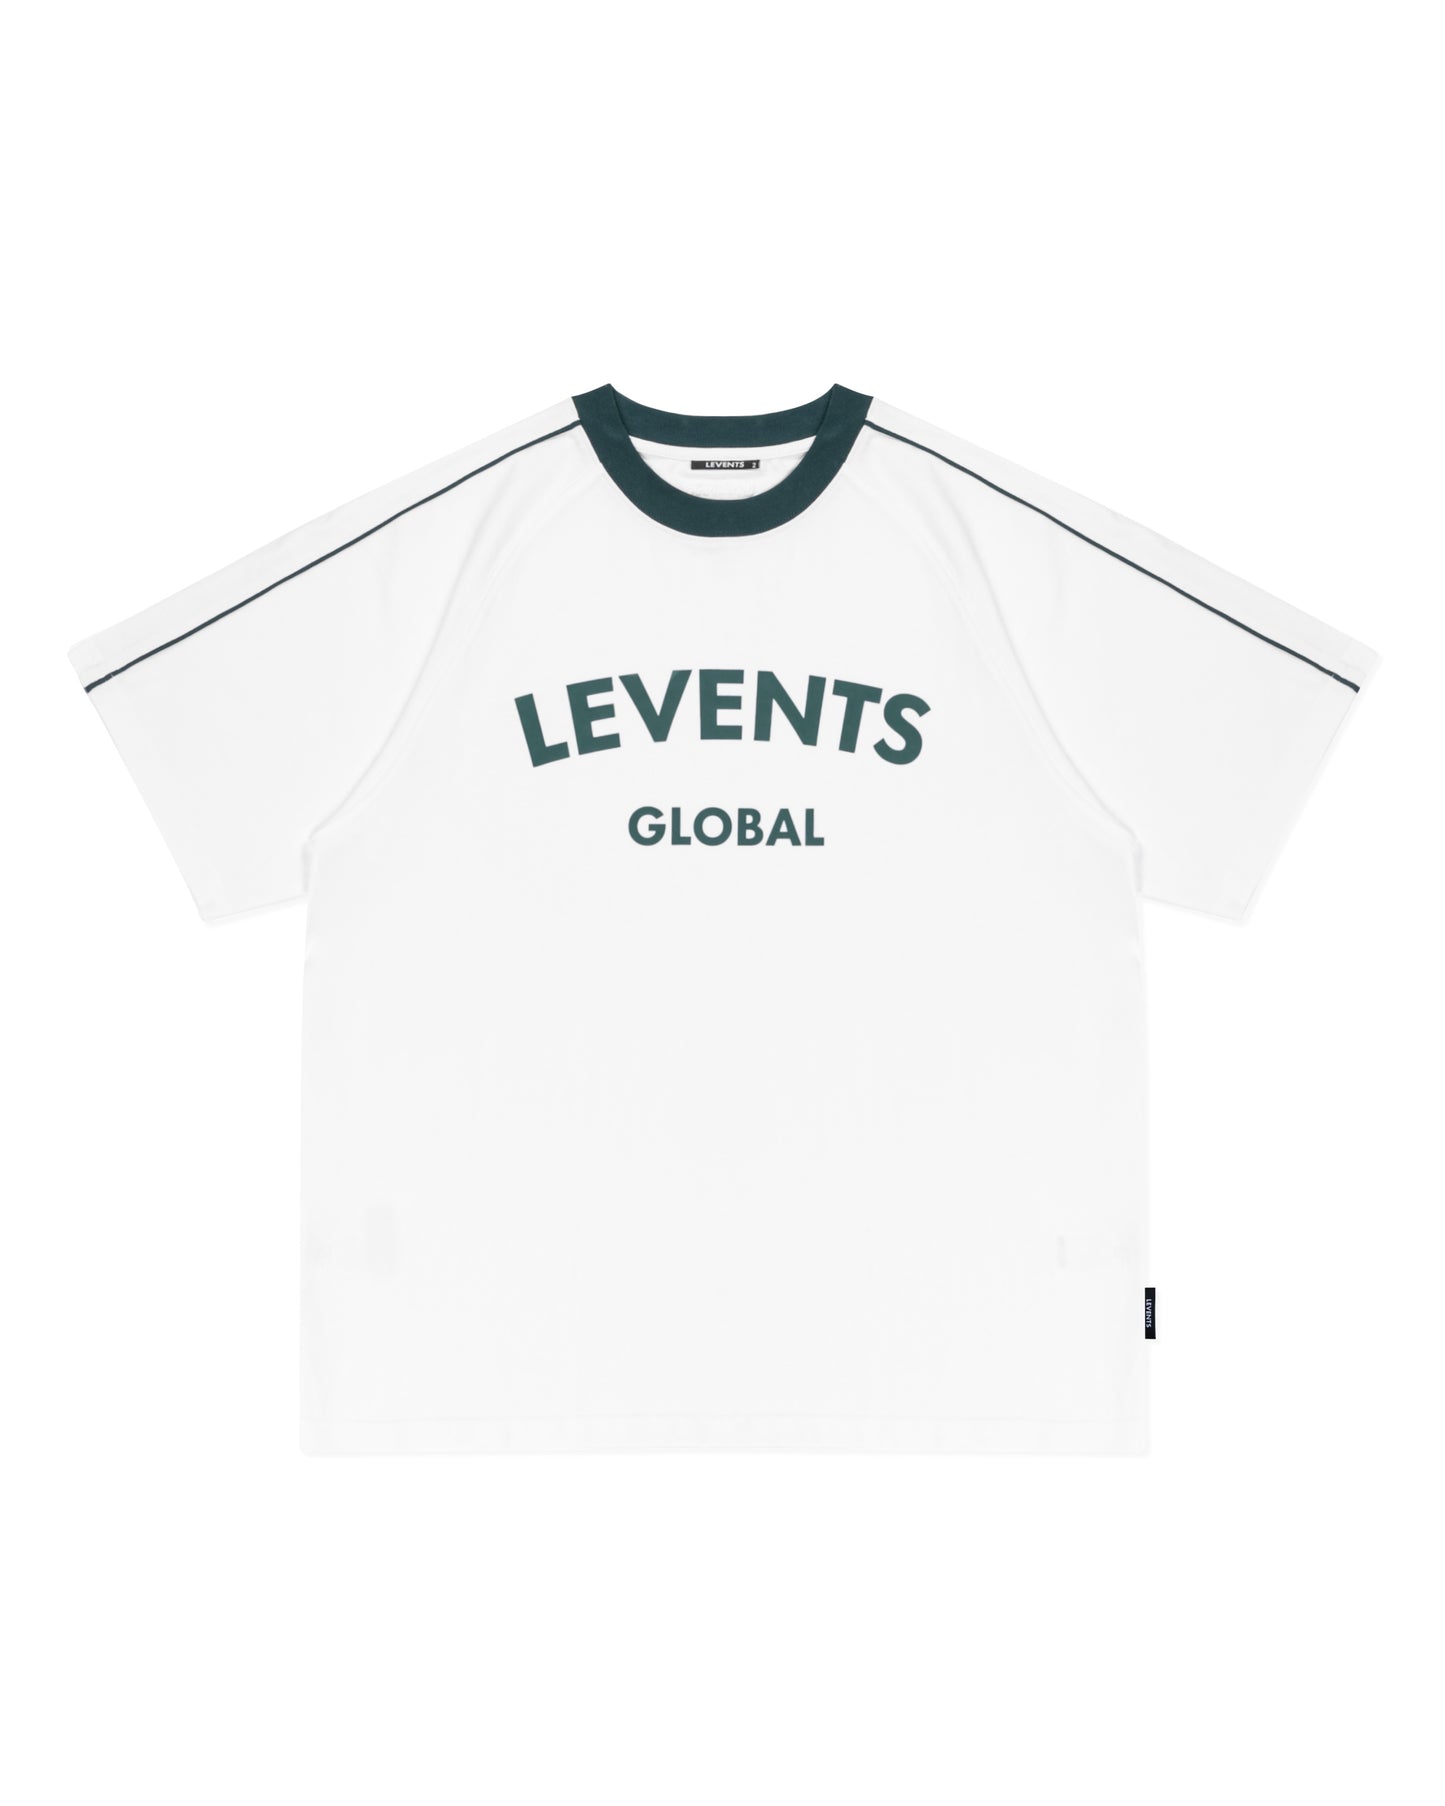 Levents® Global Raglan Tee/ Green